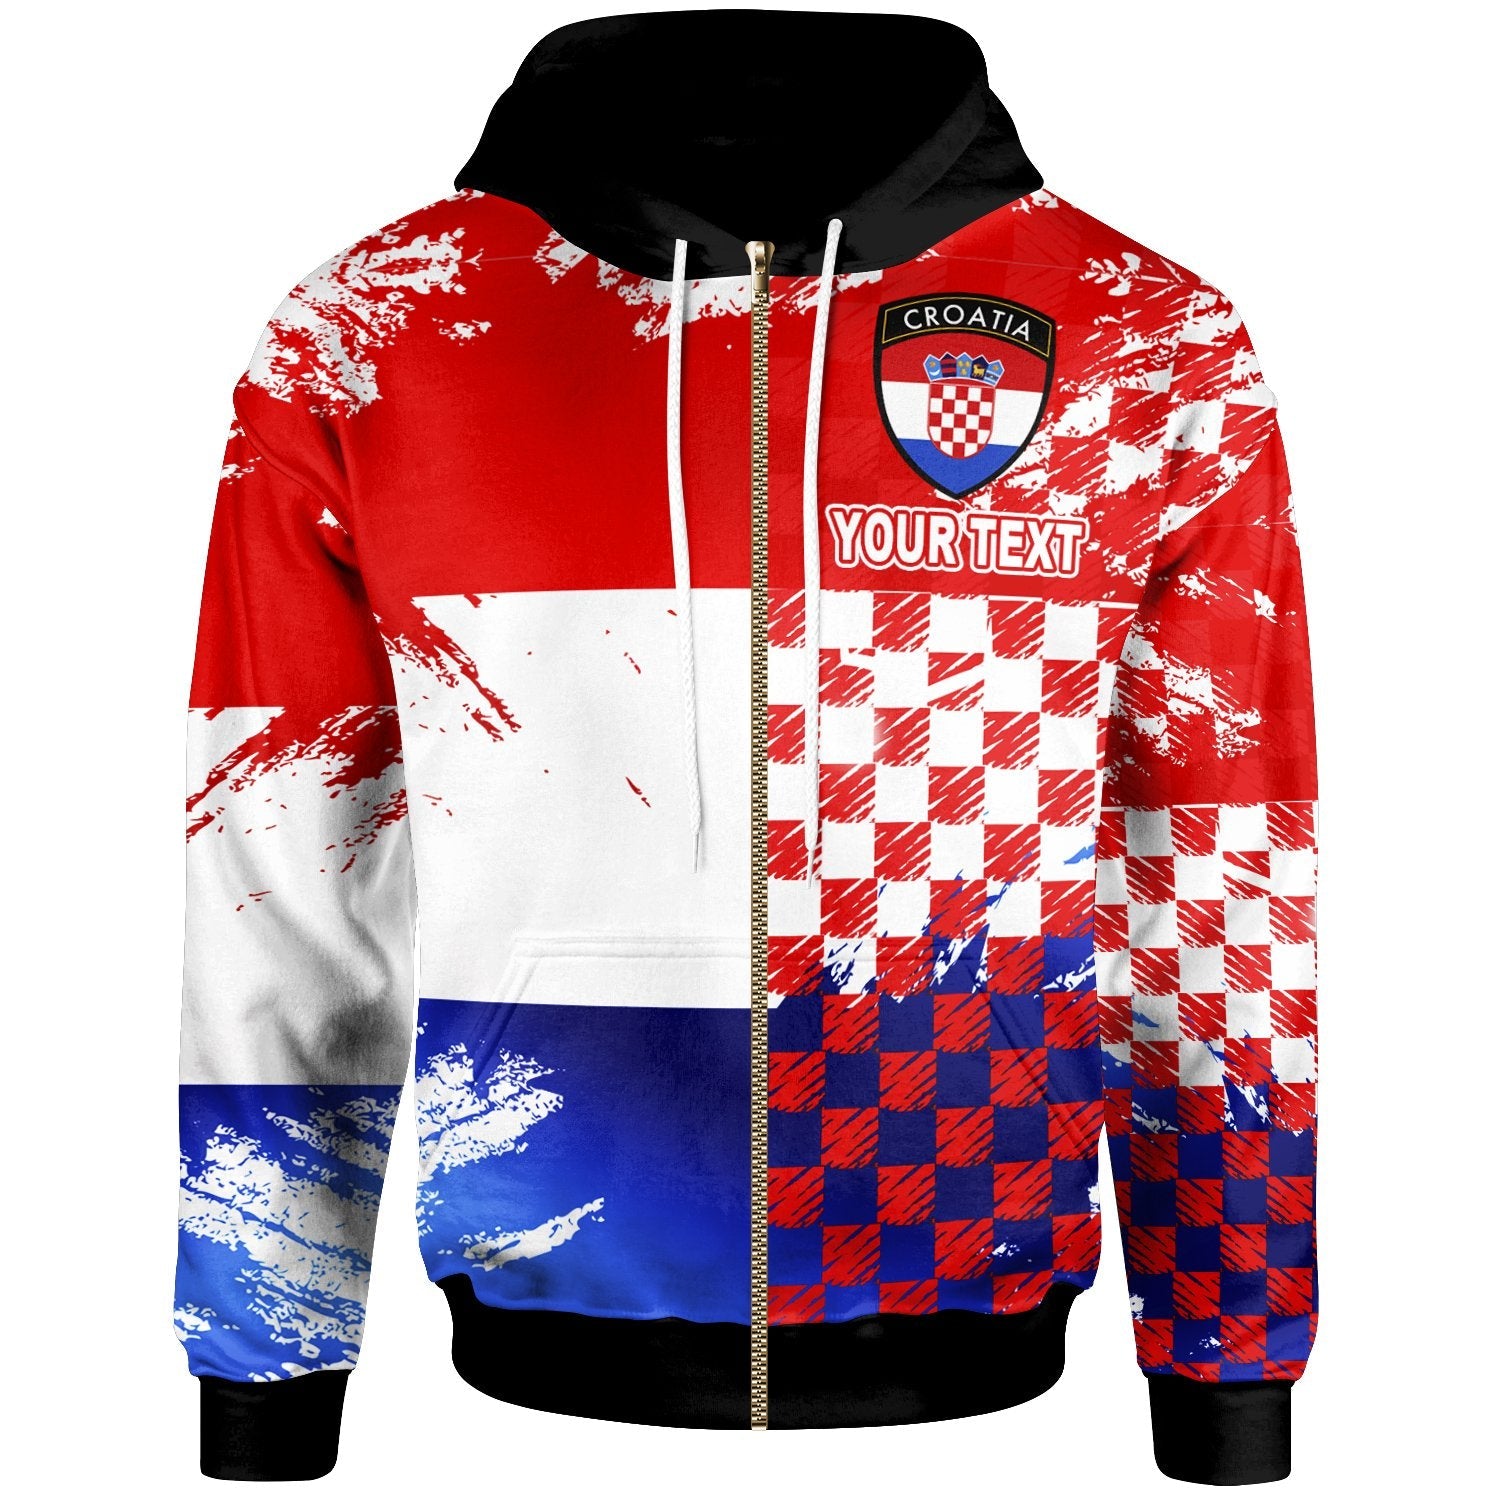 croatia-dynamic-sport-zip-hoodie